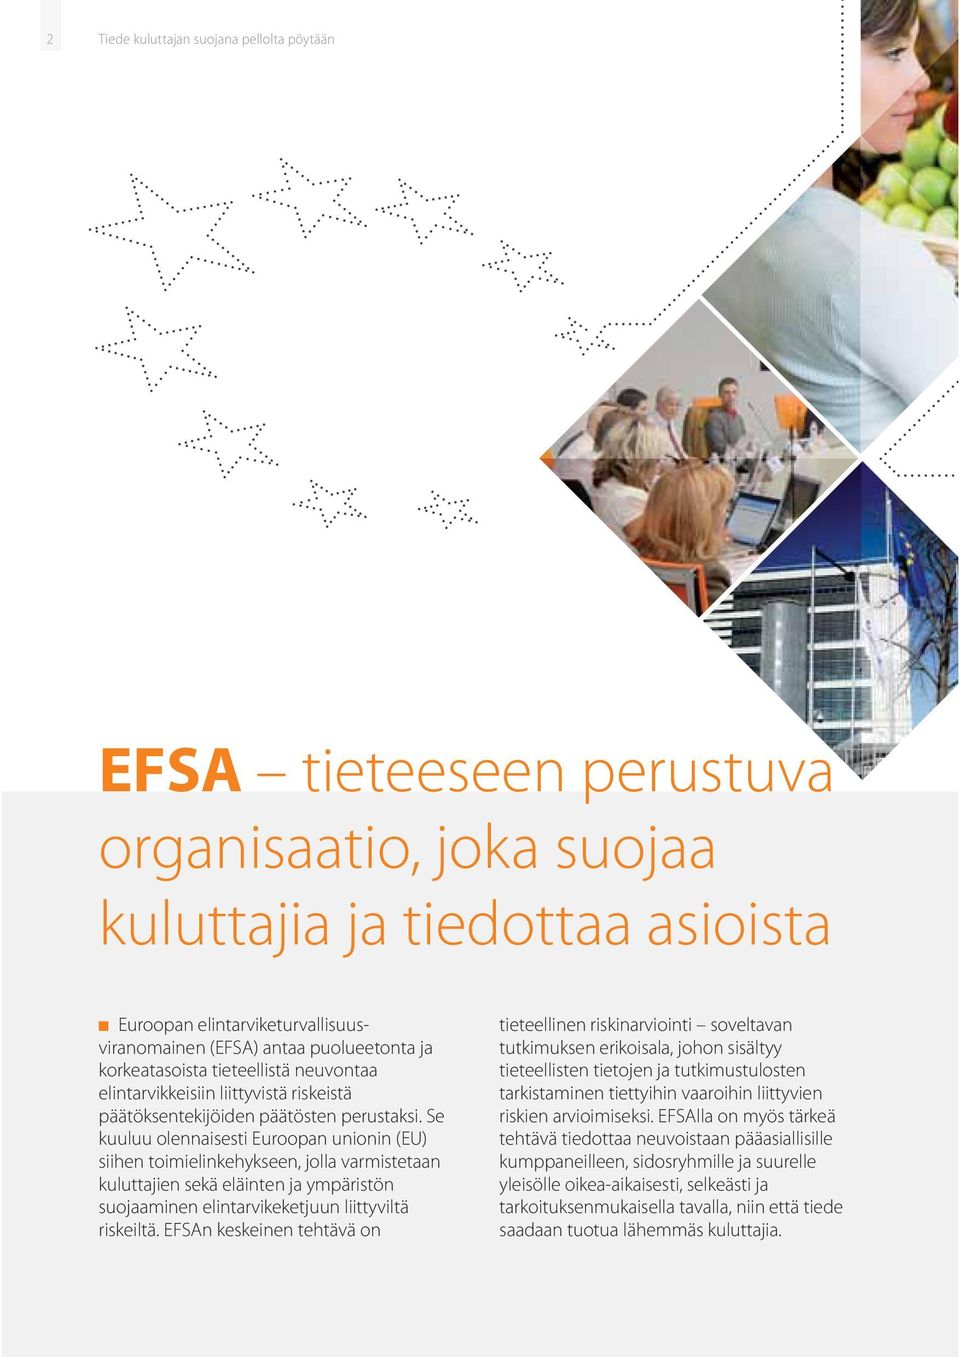 Se kuuluu olennaisesti Euroopan unionin (EU) siihen toimielinkehykseen, jolla varmistetaan kuluttajien sekä eläinten ja ympäristön suojaaminen elintarvikeketjuun liittyviltä riskeiltä.